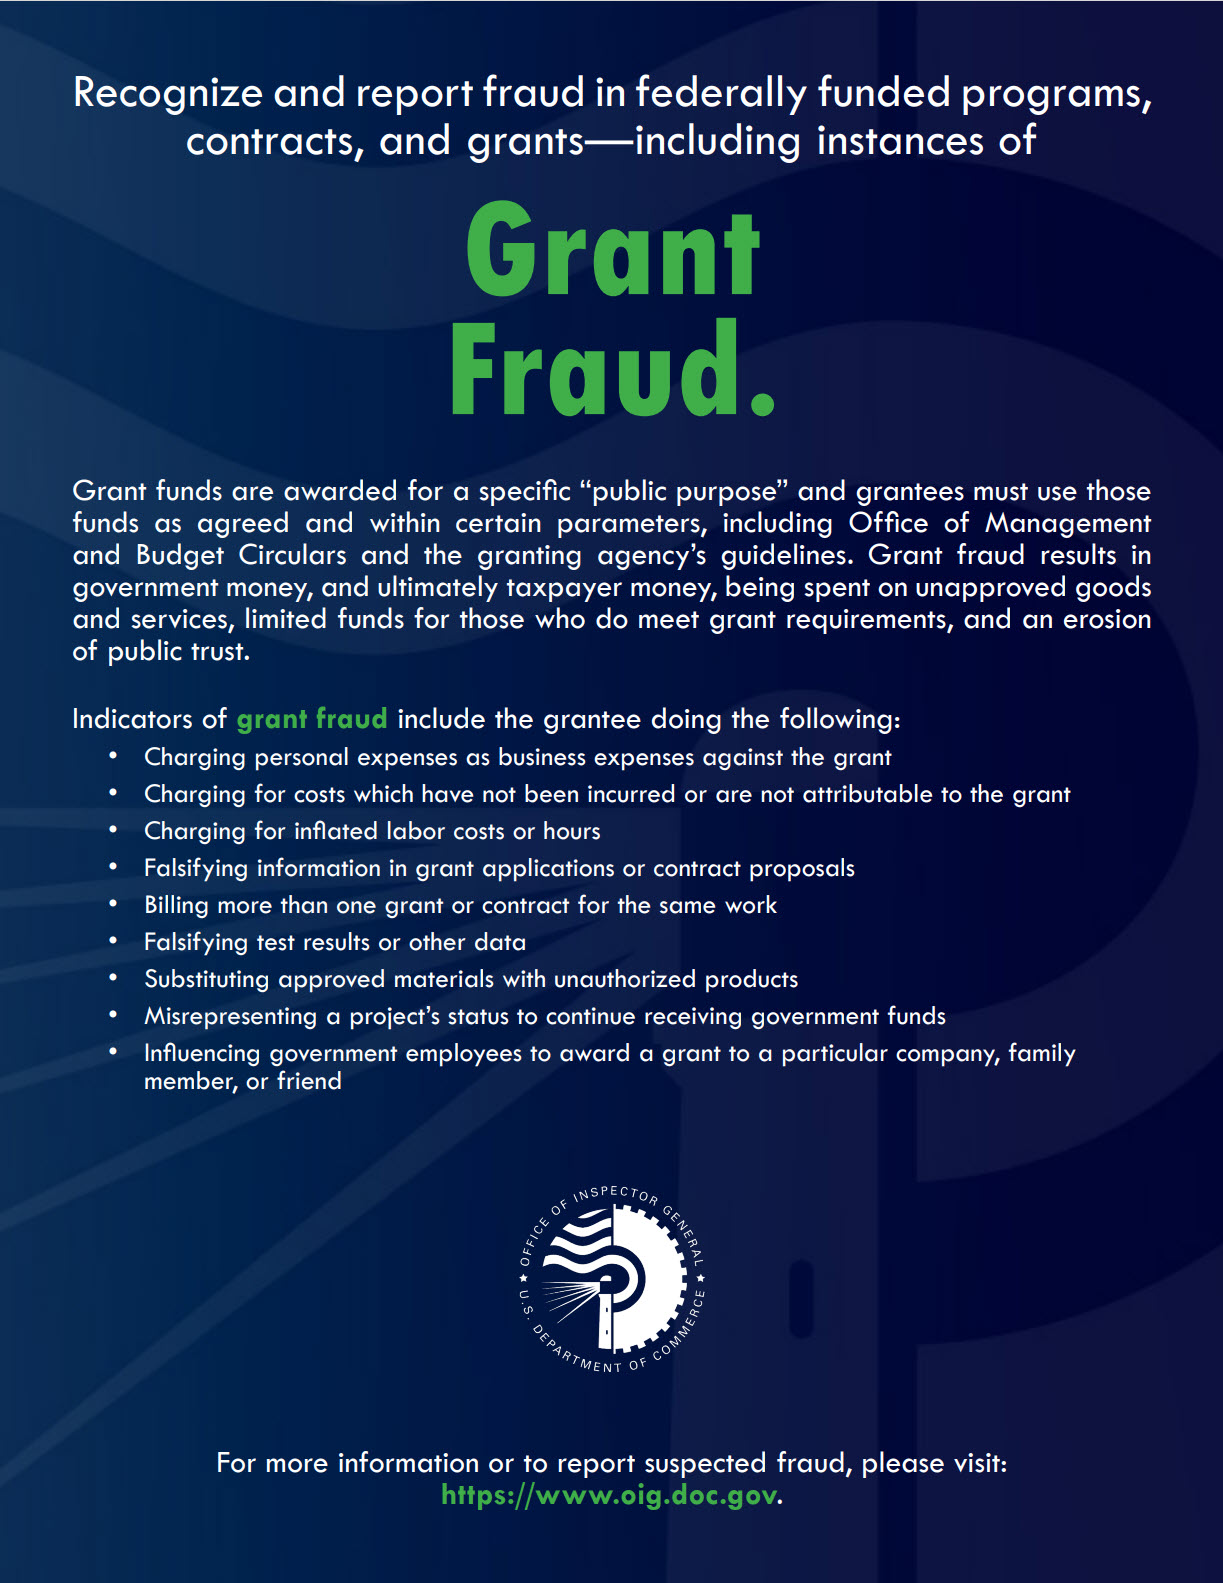 Post 5_Grant Fraud_Flyer_2021-11-09.jpg